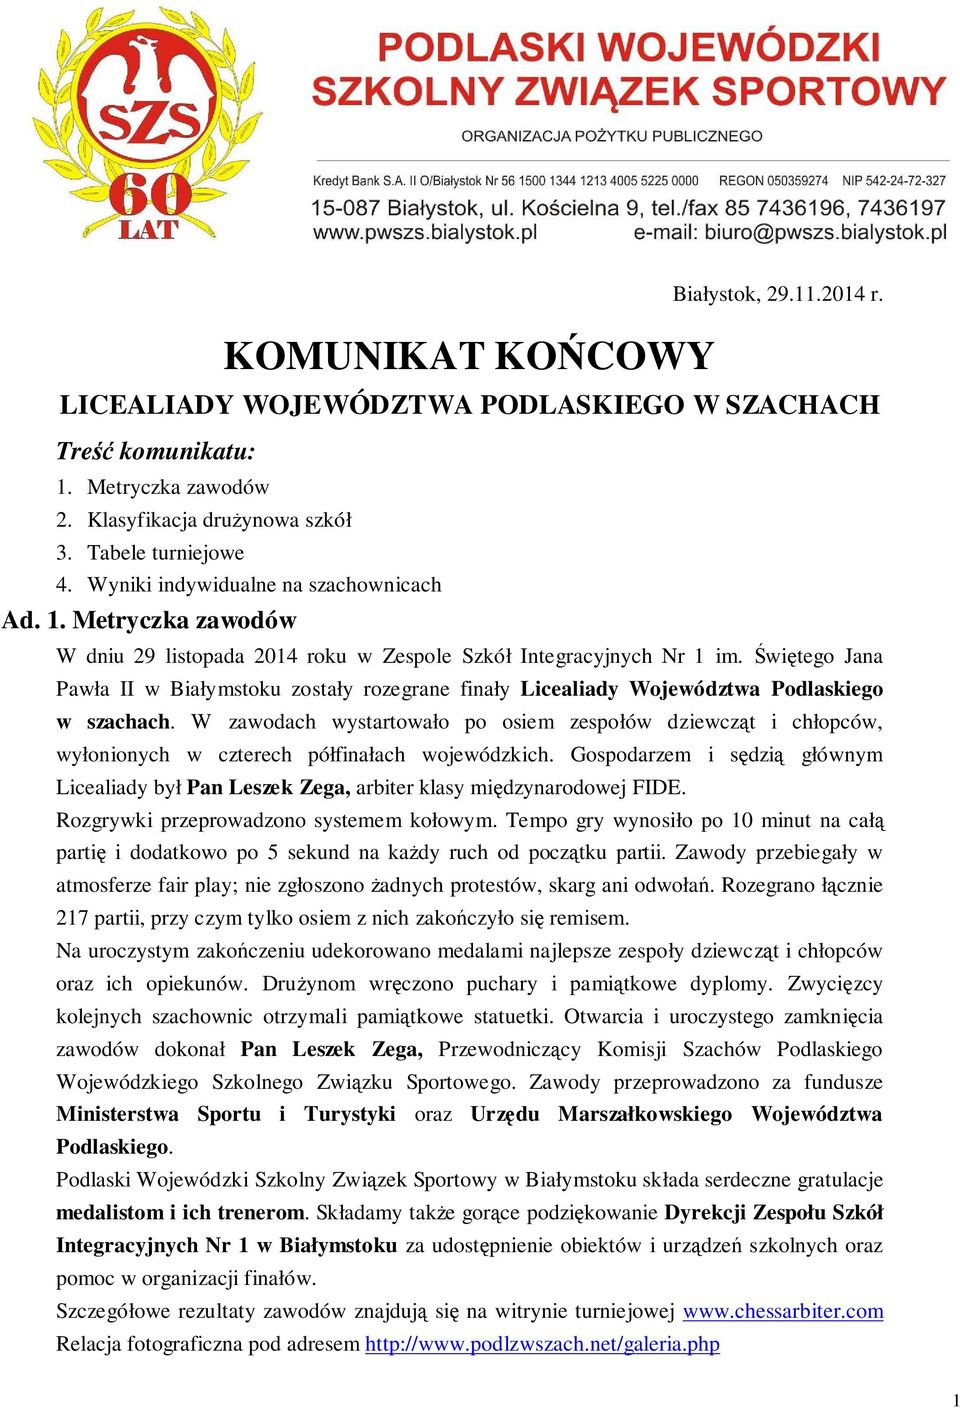 Świętego Jana Pawła II w Białymstoku zostały rozegrane finały Licealiady Województwa Podlaskiego w szachach.